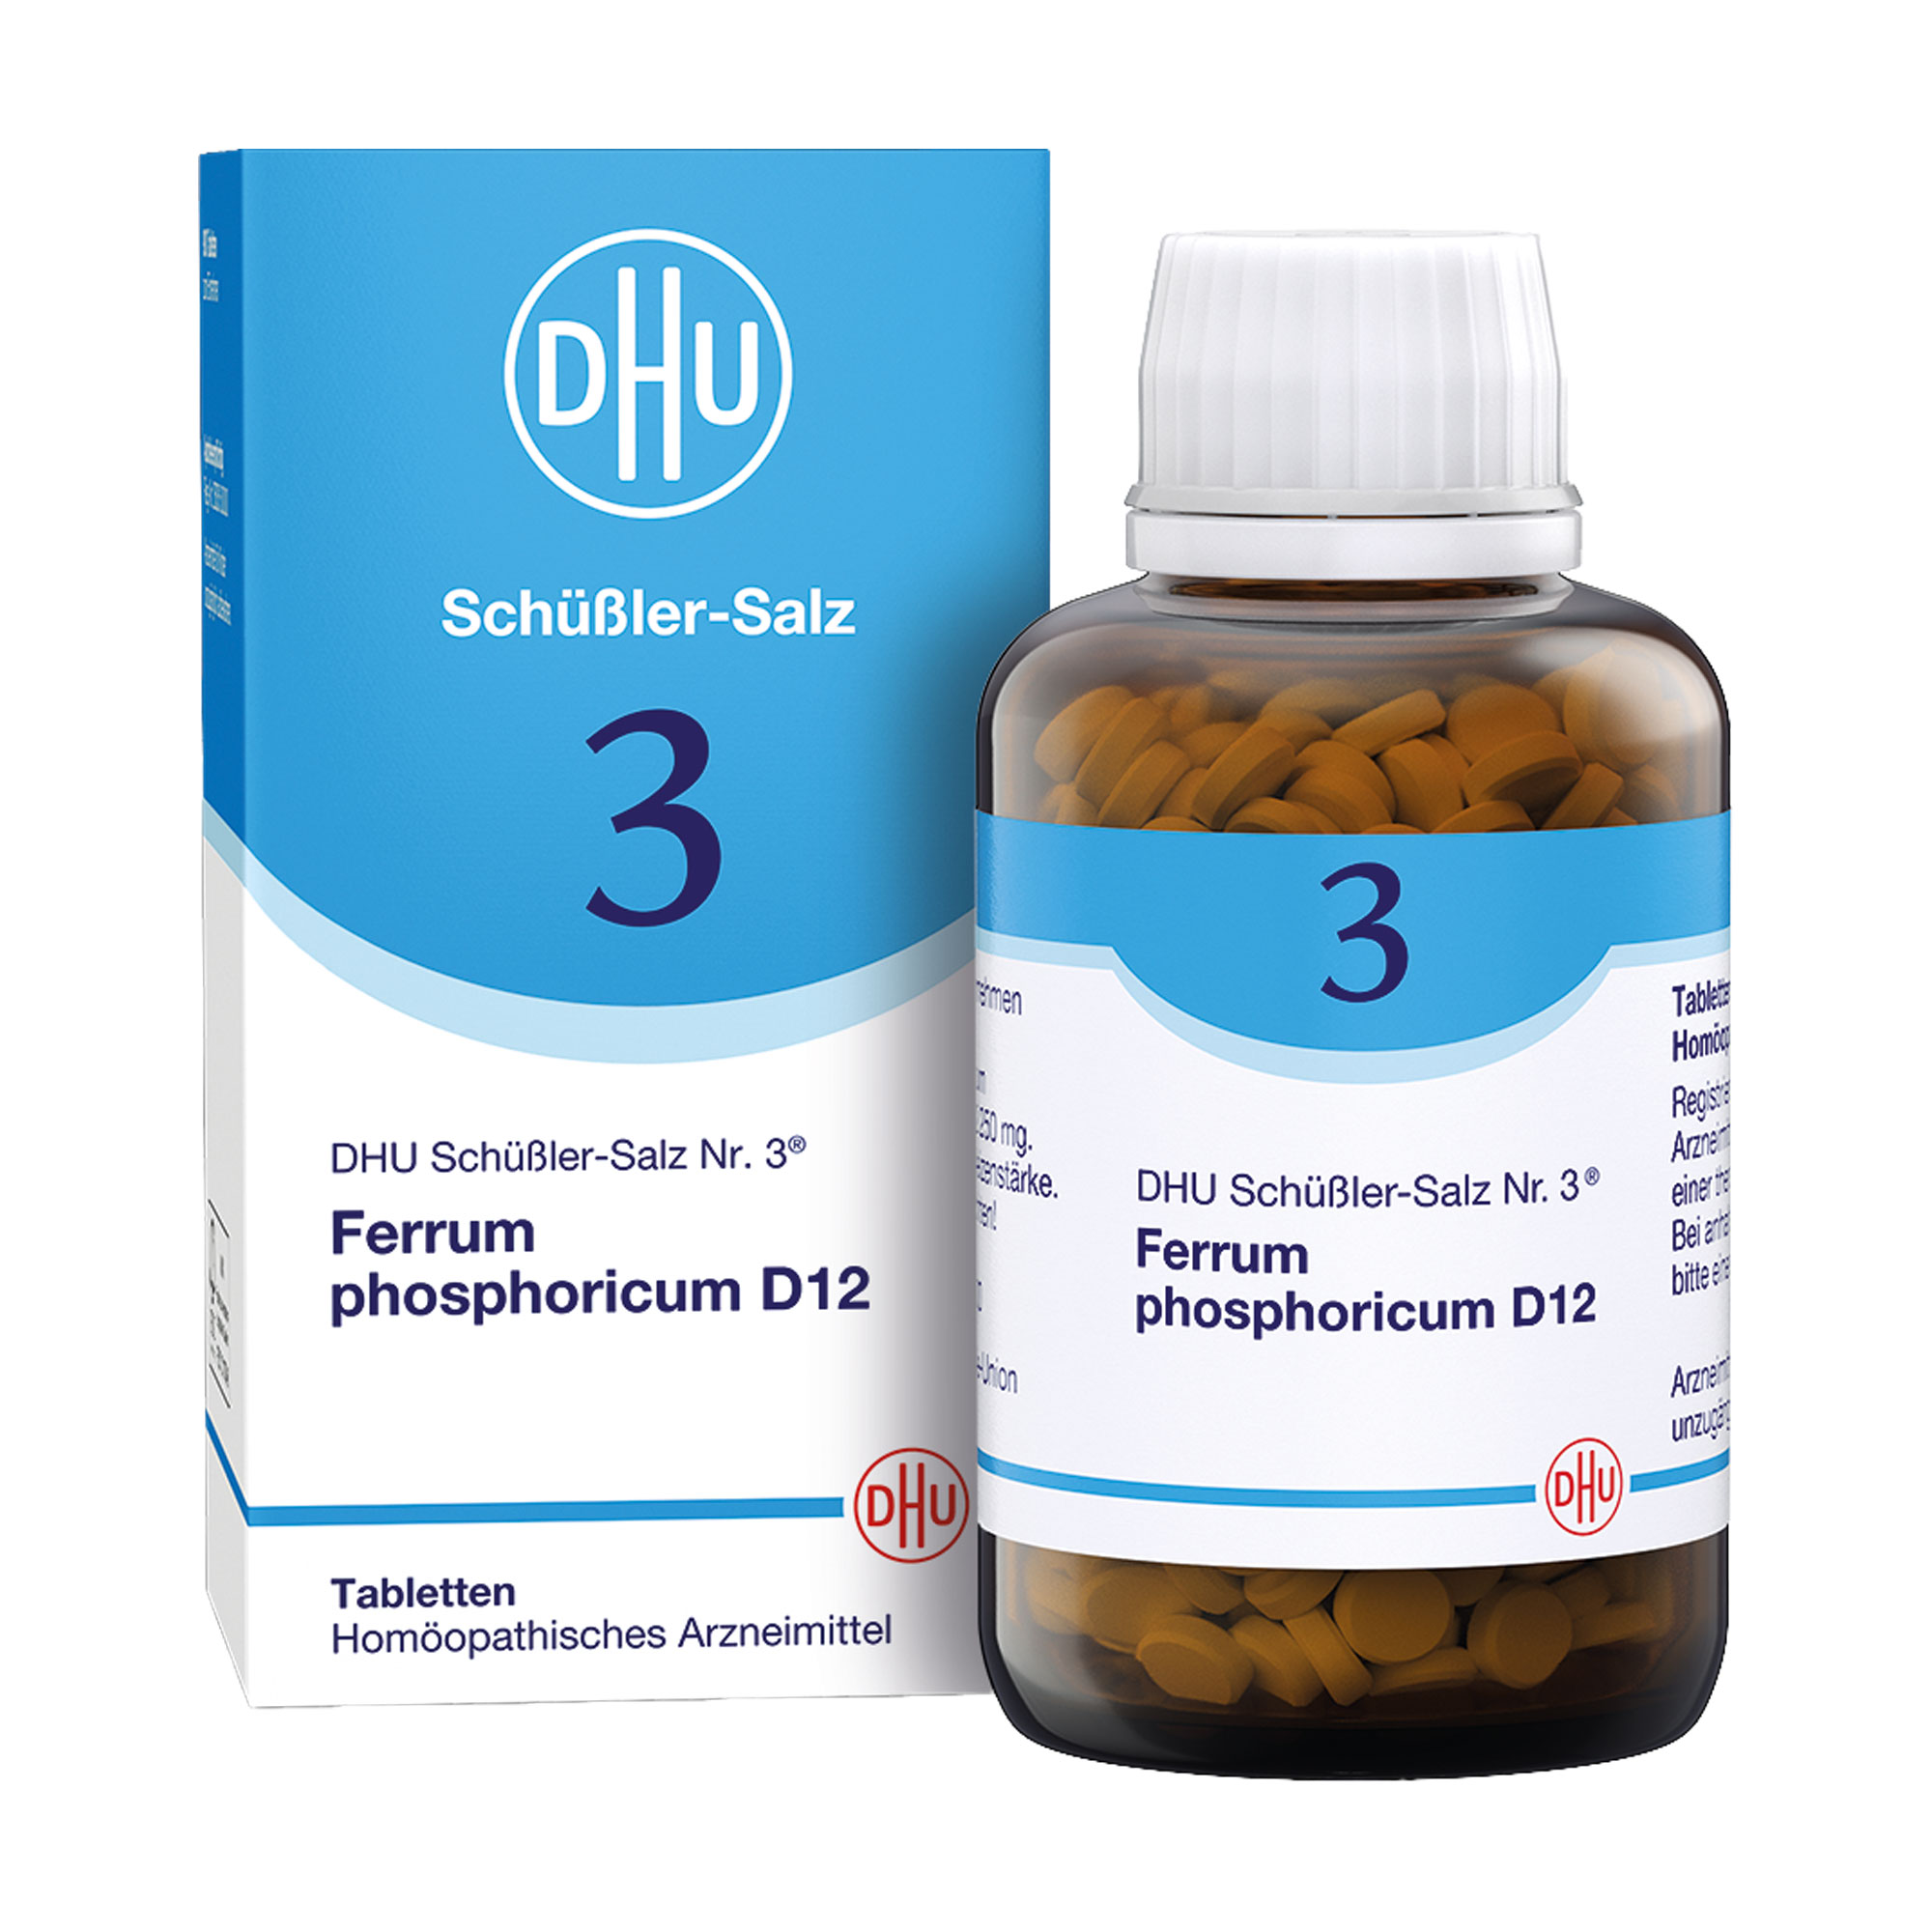 Homöopathisches Arzneimittel mit Ferrum phosphoricum Trit. D12.